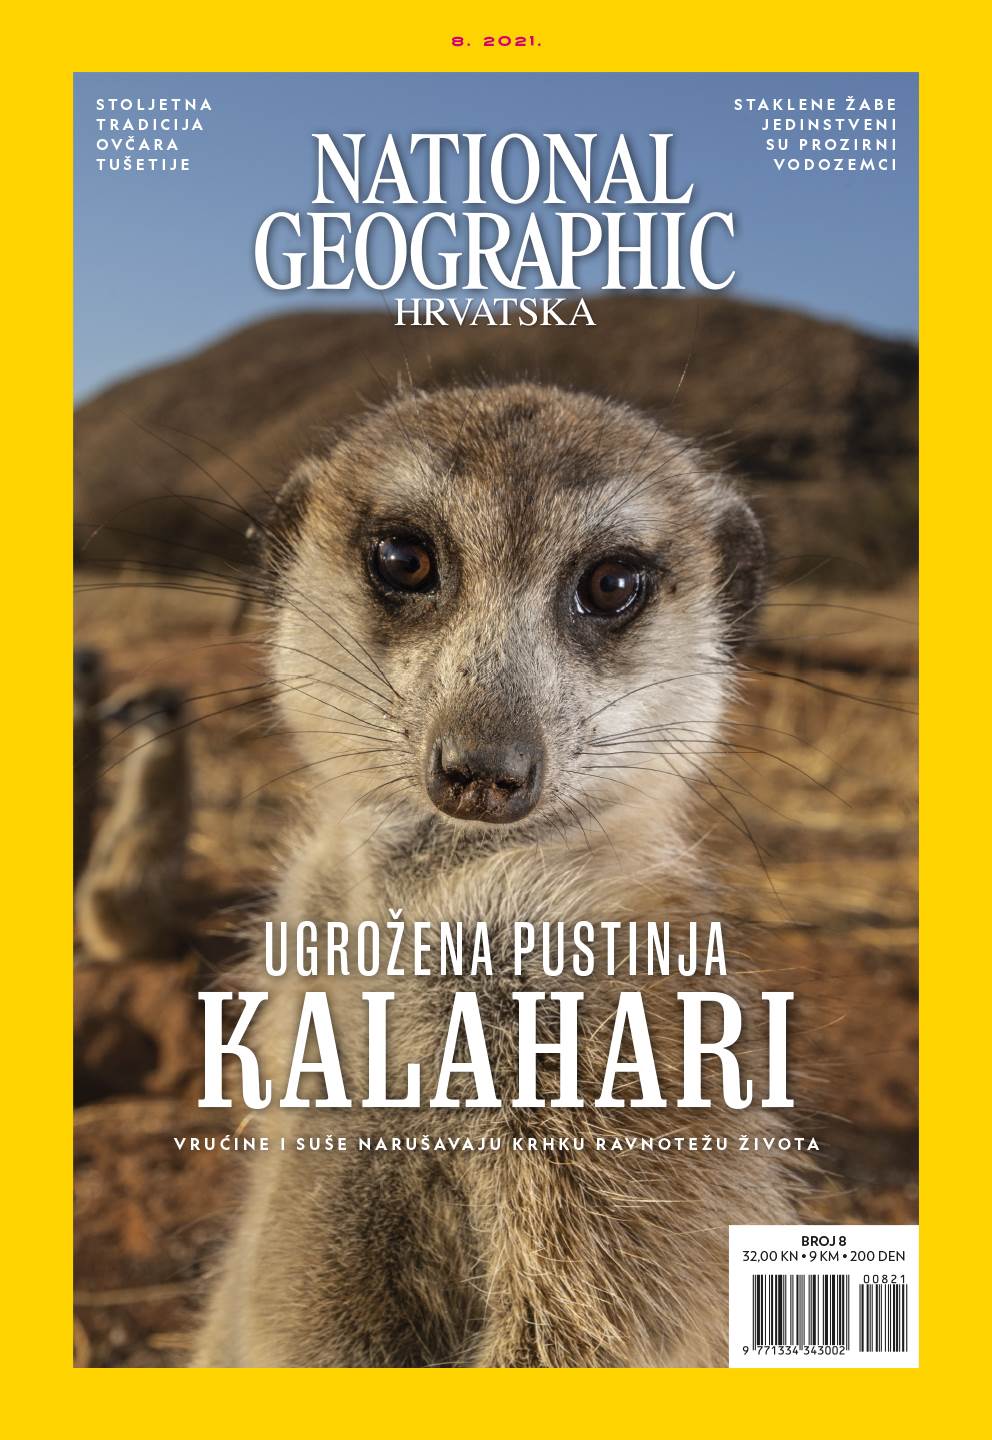 National Geographic novi broj